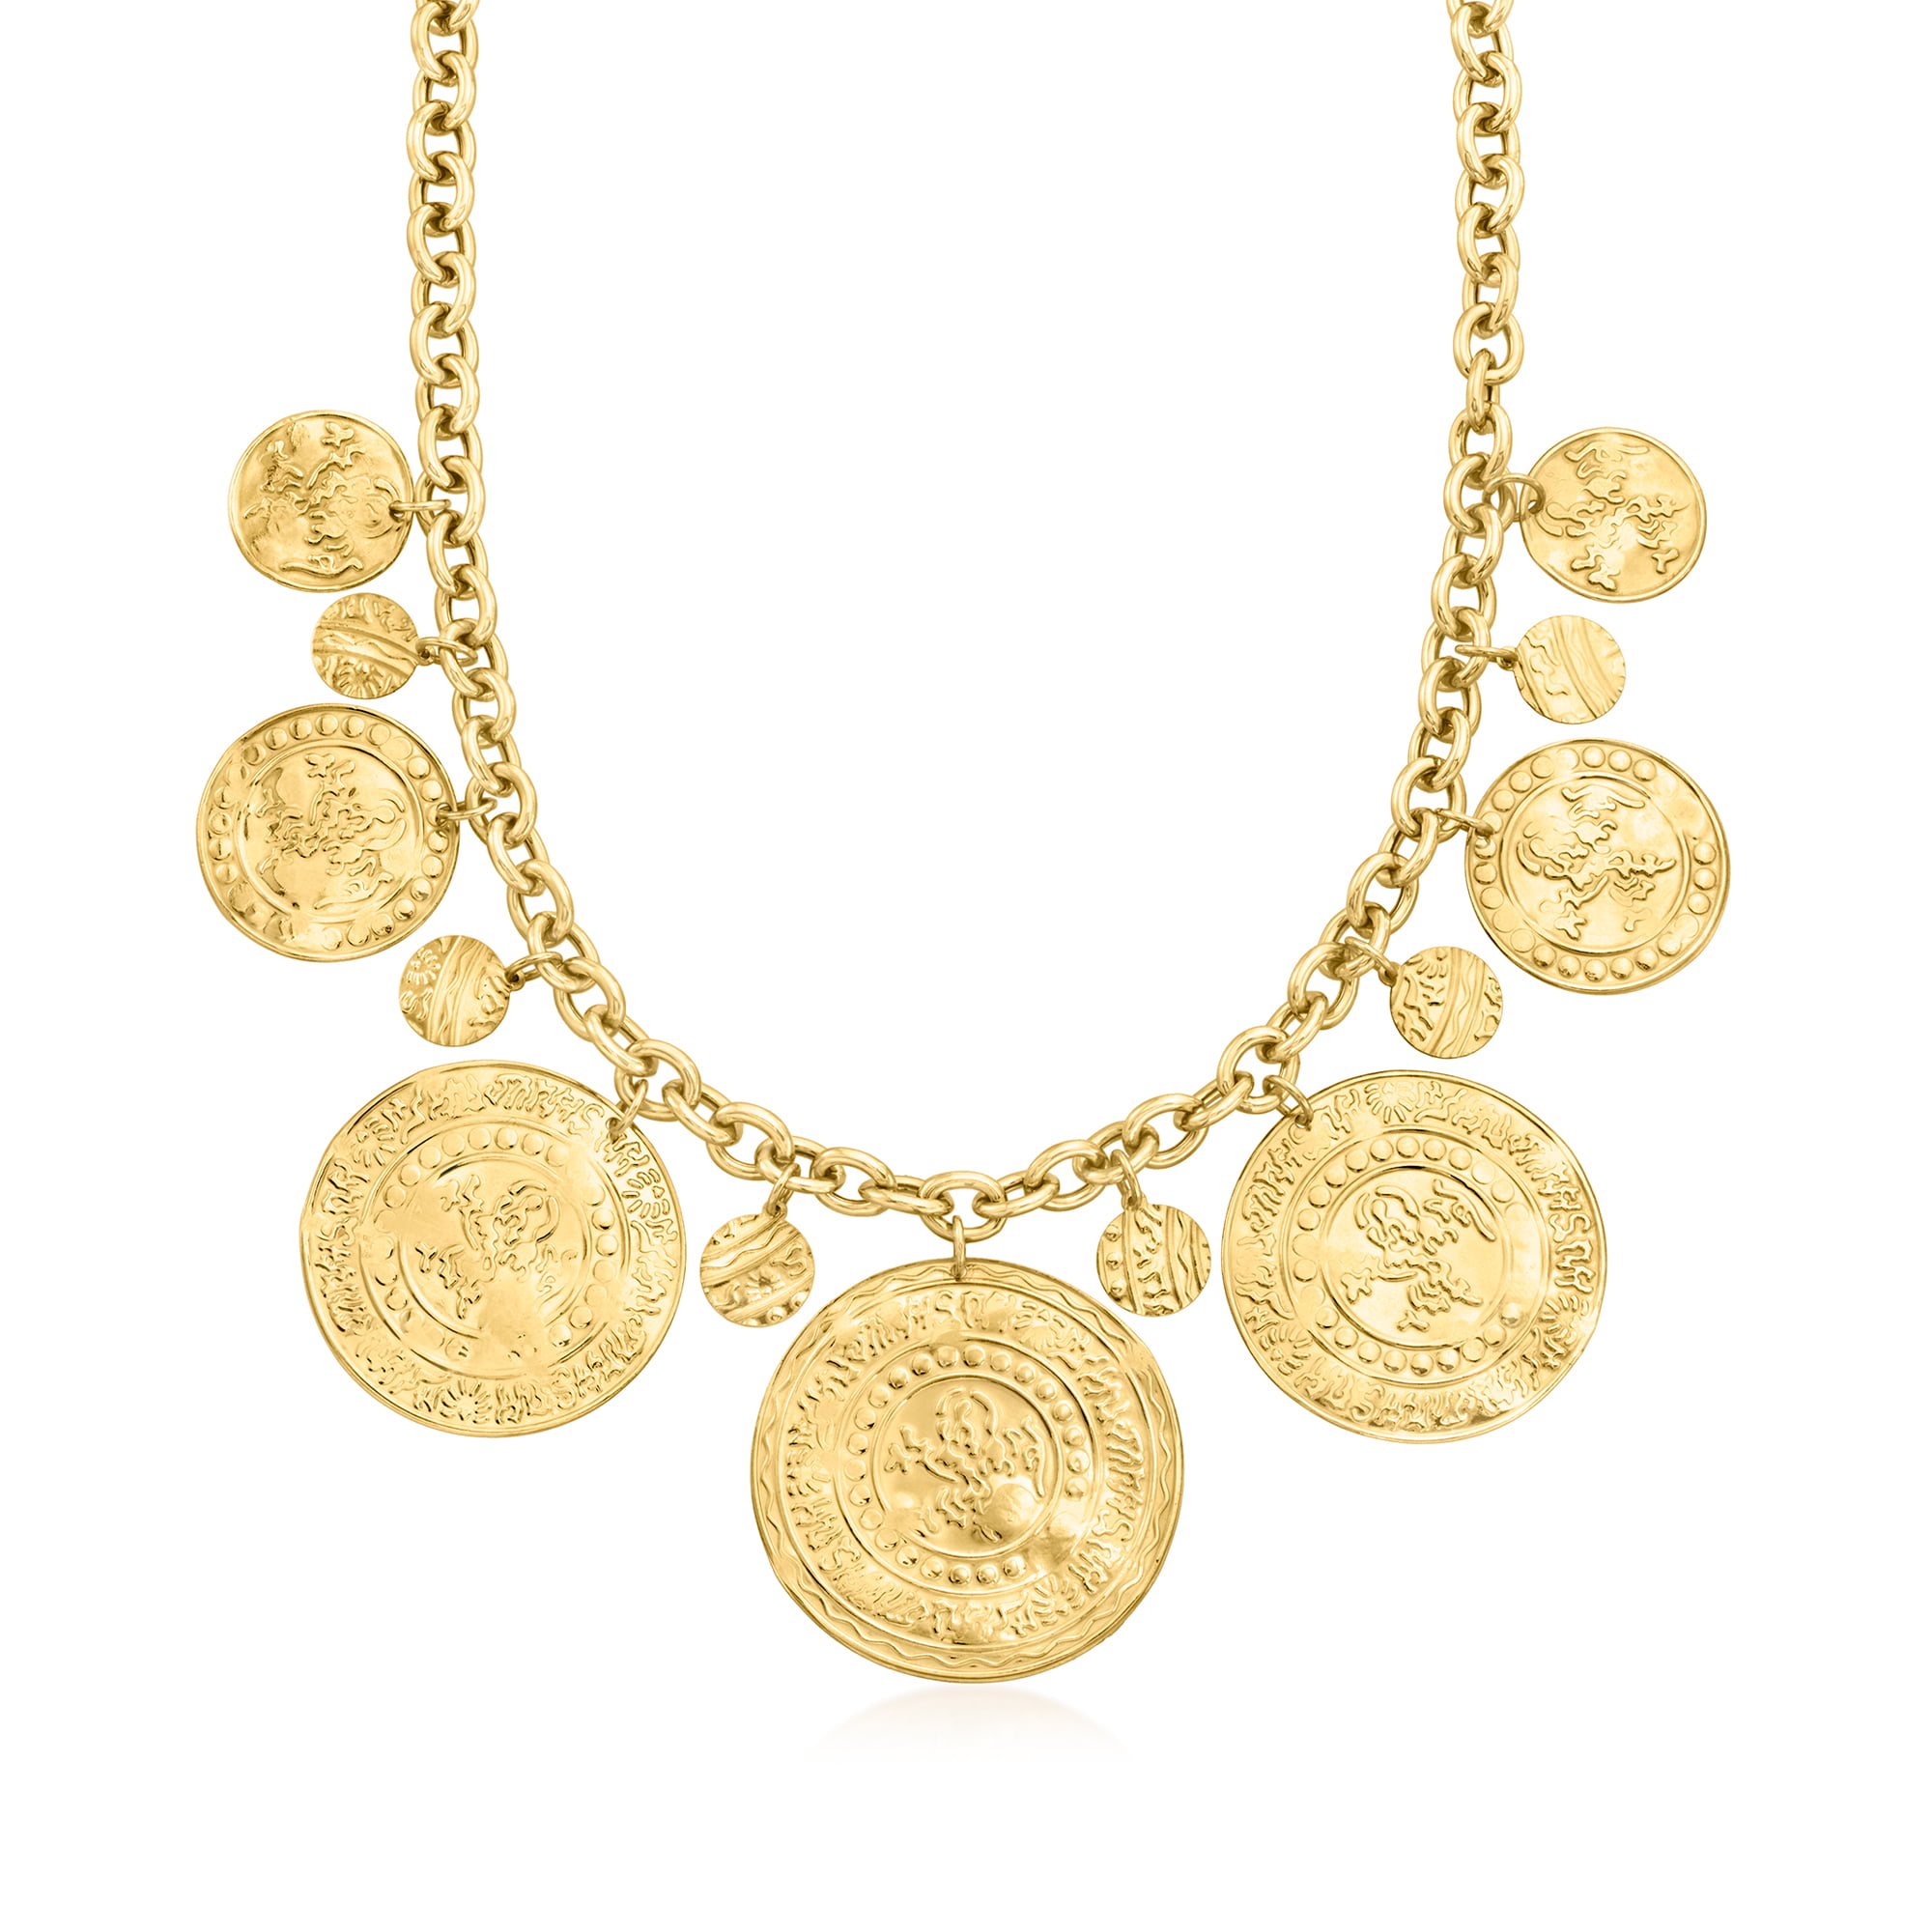 18K Gold Queen Coin Necklace, Silver Queen PendanNecklace, Coin Pendant  Necklace | eBay